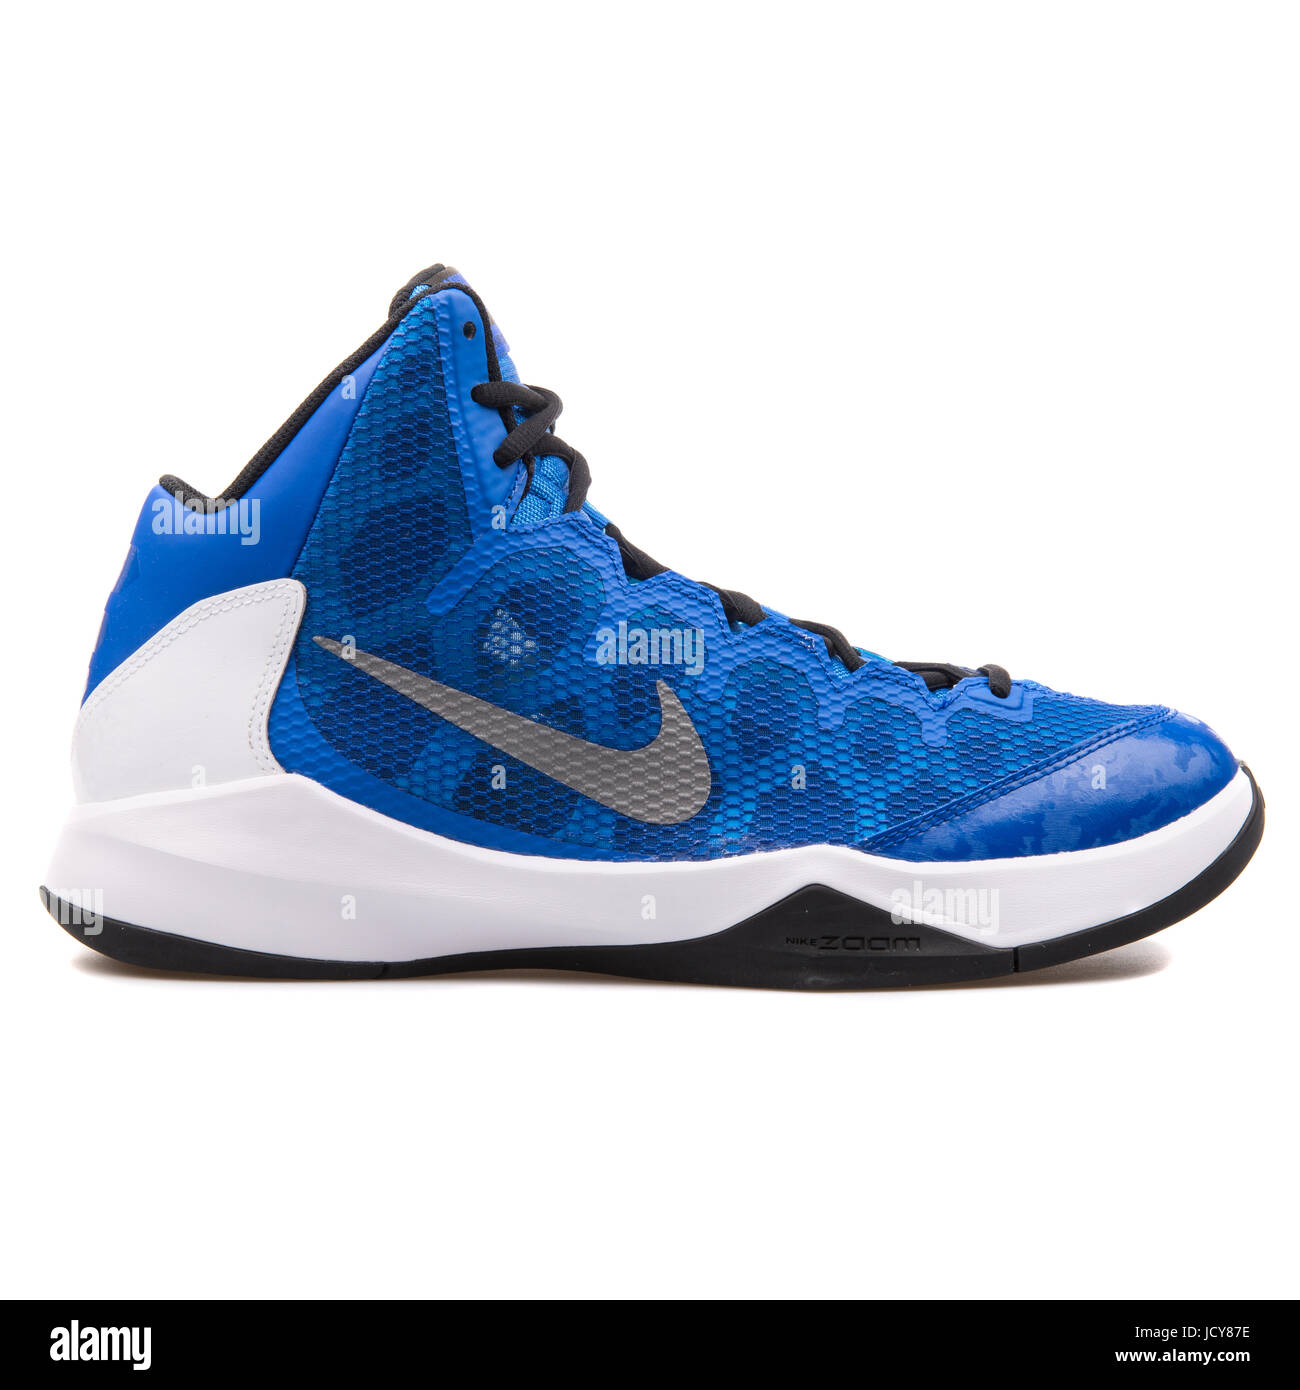 Nike Zoom ohne einen Zweifel Königsblau und weiße Männer Basketball-Schuhe  - 749432-401 Stockfotografie - Alamy